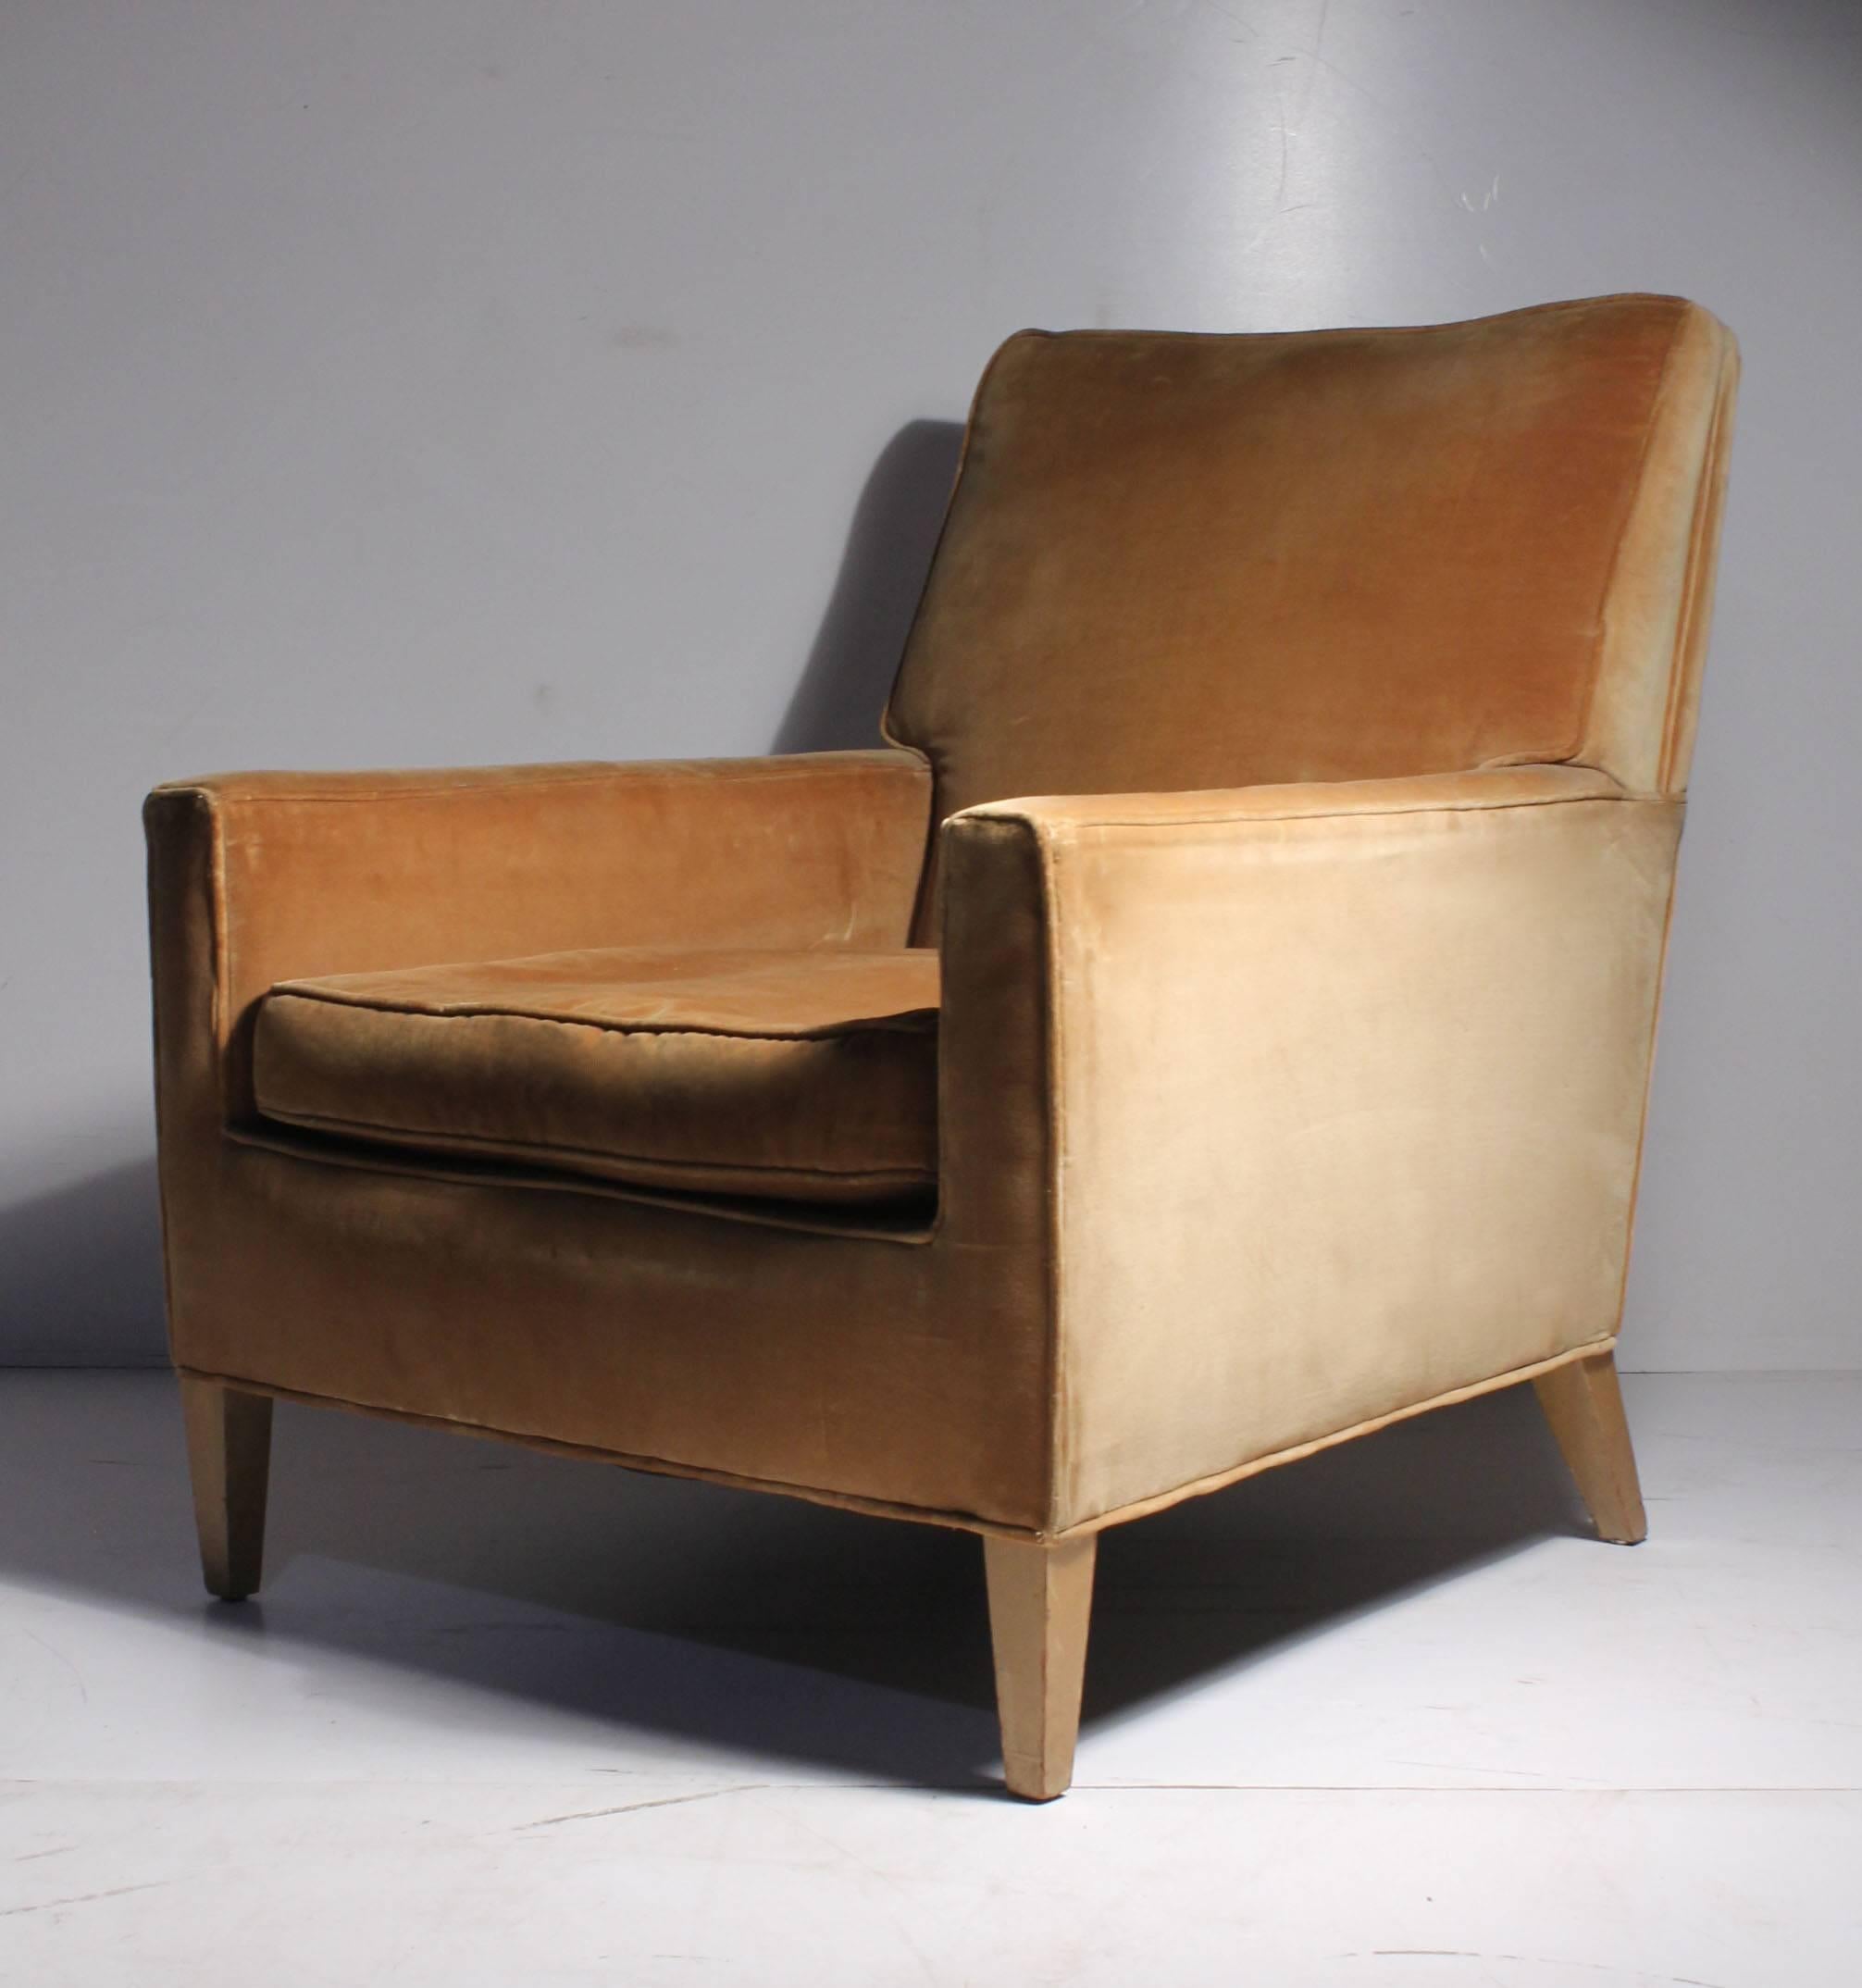 Vintage Robsjohn-Gibbings Lounge Chair für Widdicomb. Schöne Proportionen. Eine eher seltene Form der tiefen Lounge.

